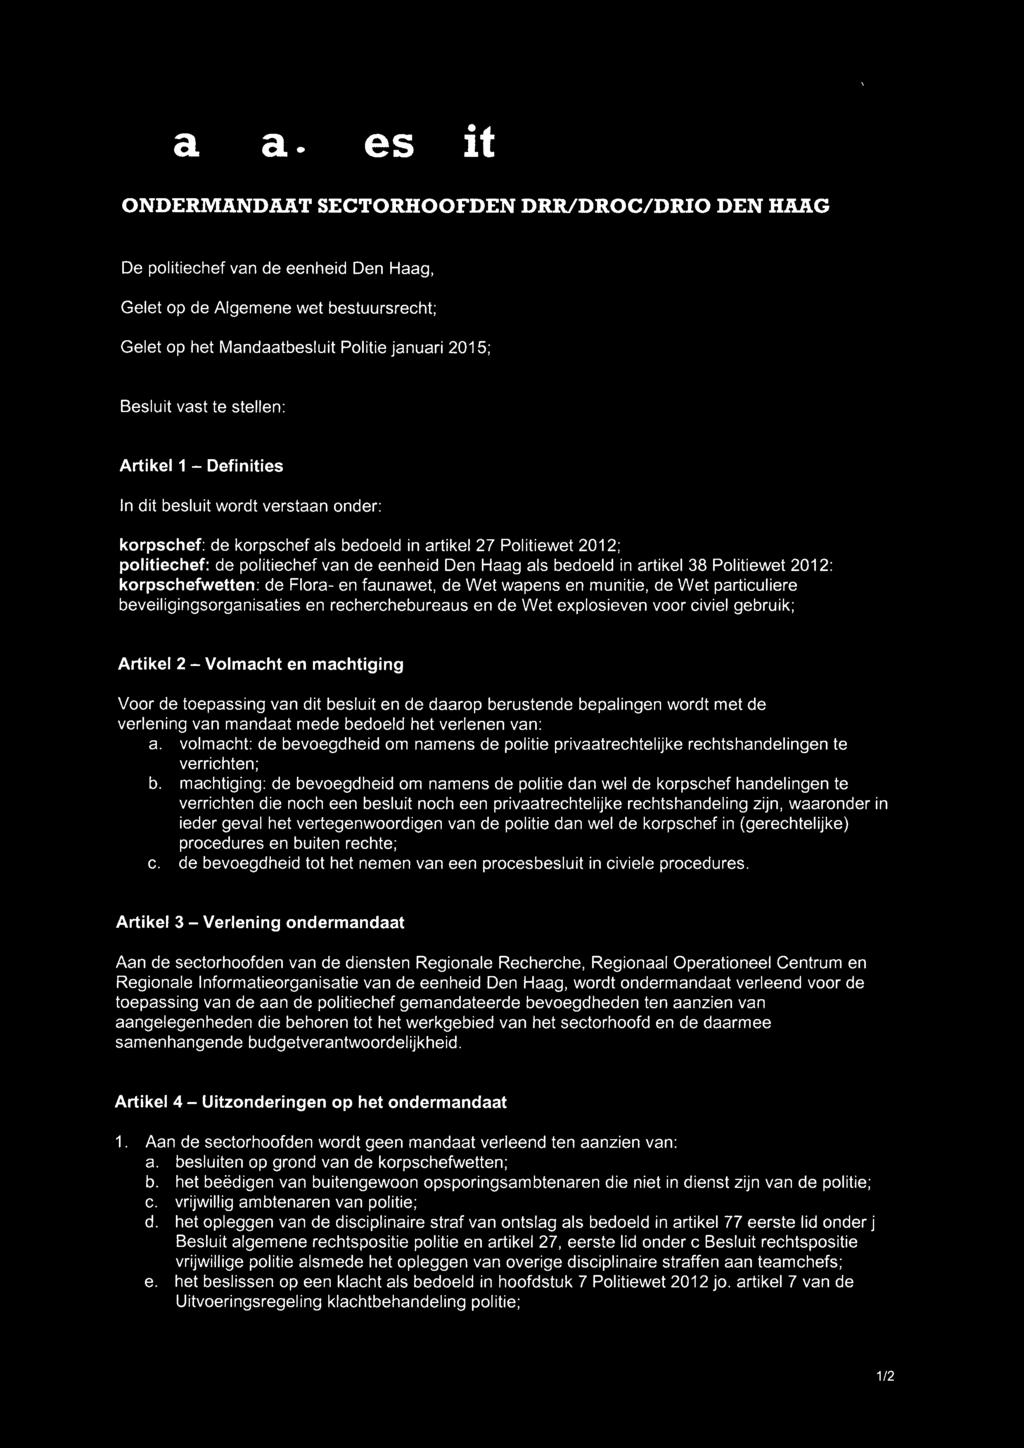 Haag als bedoeld in artikel 38 Politiewet 2012: korpschefwetten: de Flora- en faunawet, de Wet wapens en munitie, de Wet particuliere beveiligingsorganisaties en recherchebureaus en de Wet